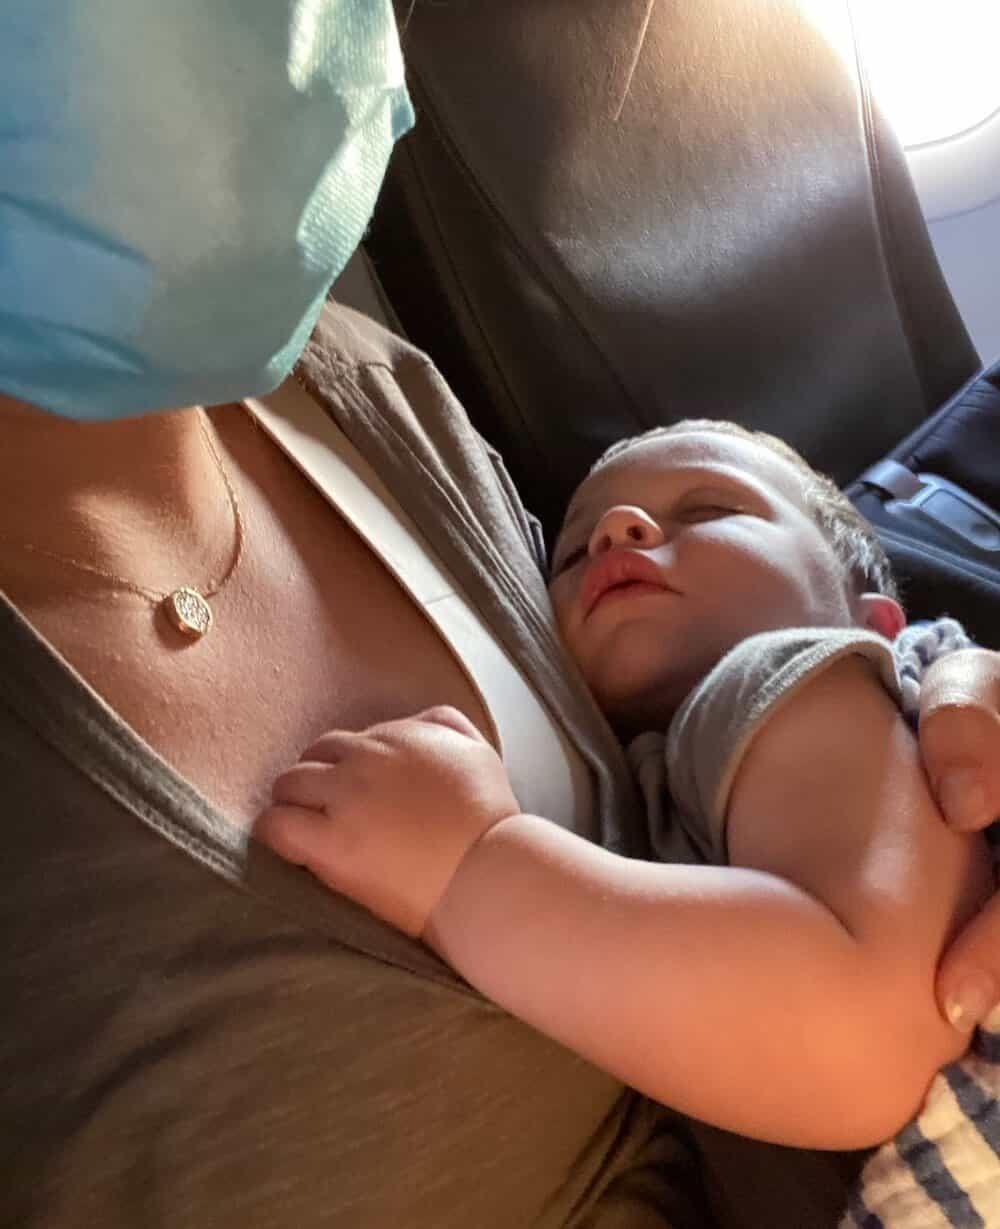 sleeping baby mom wearing mask on plane